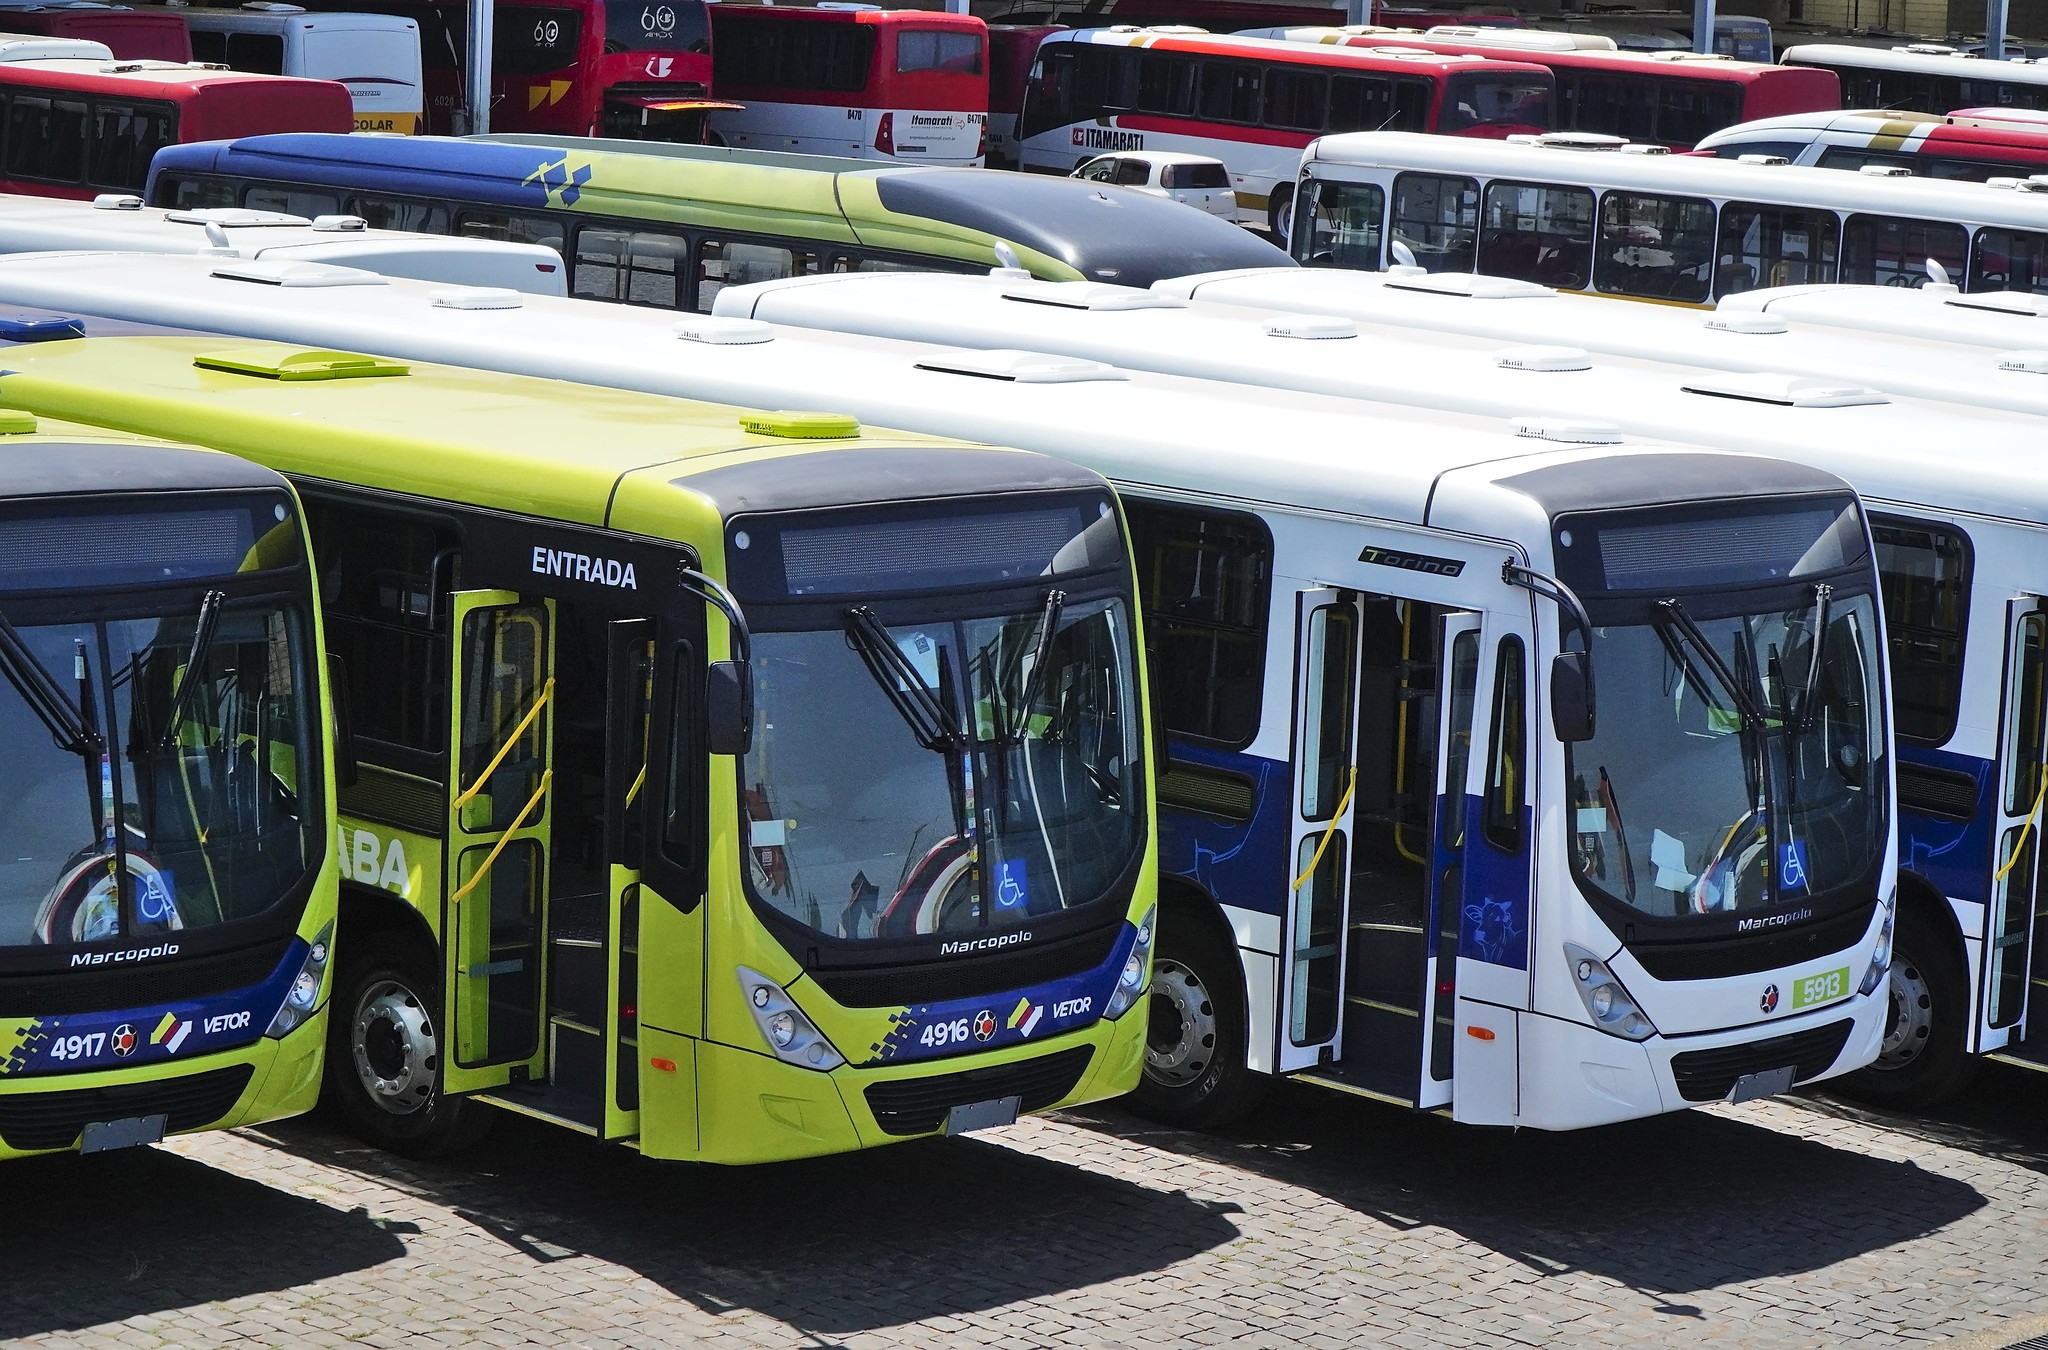 Volte tranquilo: 8 rotas especiais de ônibus atenderão o público da ExpoZebu após os shows